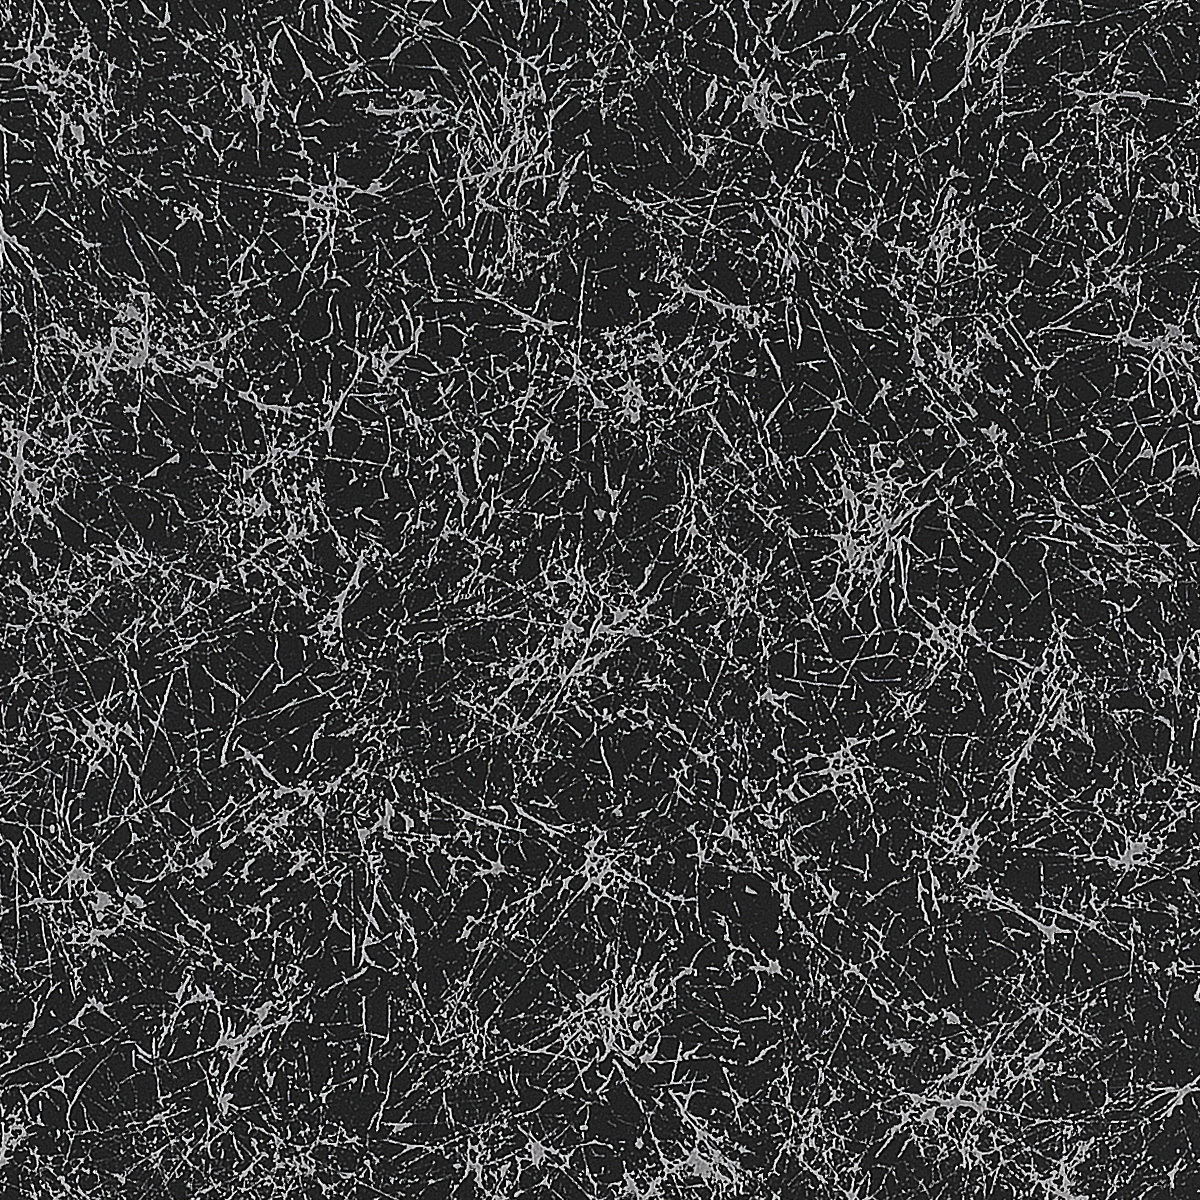 6000 黑銀冰紋meteor Shower